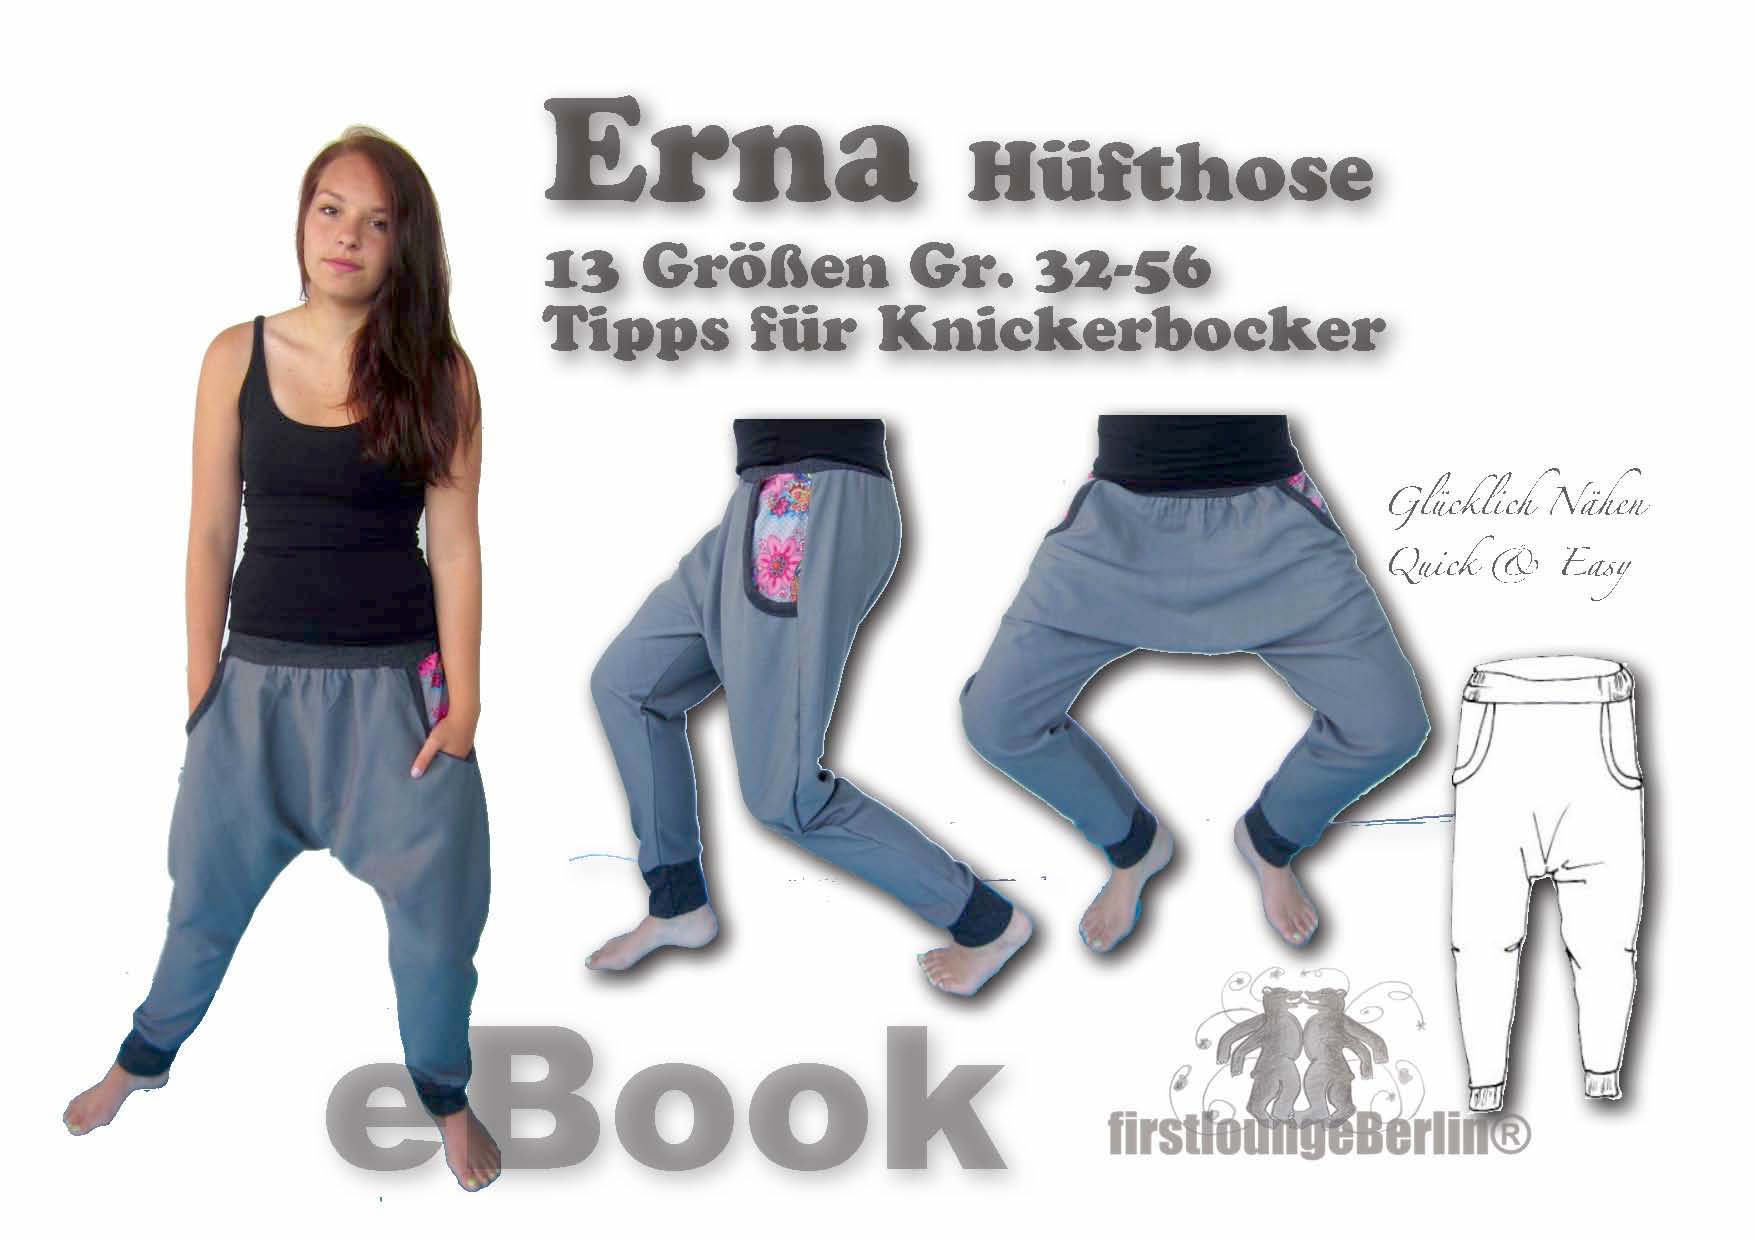 Erna *** E-Book pattern Hüft-Hose mit Taschen in 2 Varianten